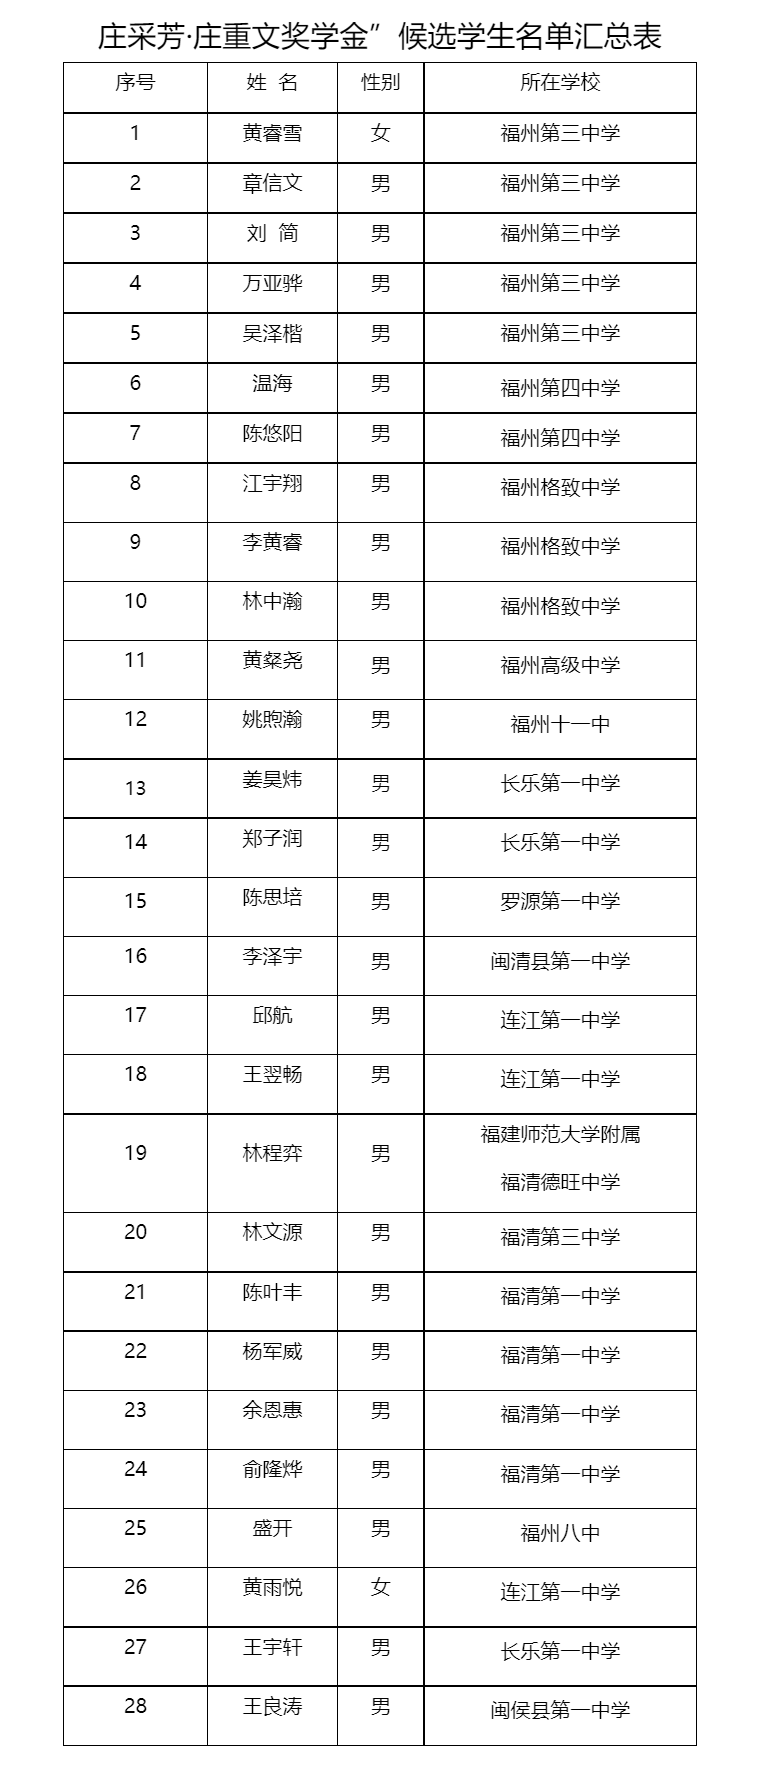 公示！福州28名学生拟获得“庄采芳·庄重文奖学金”